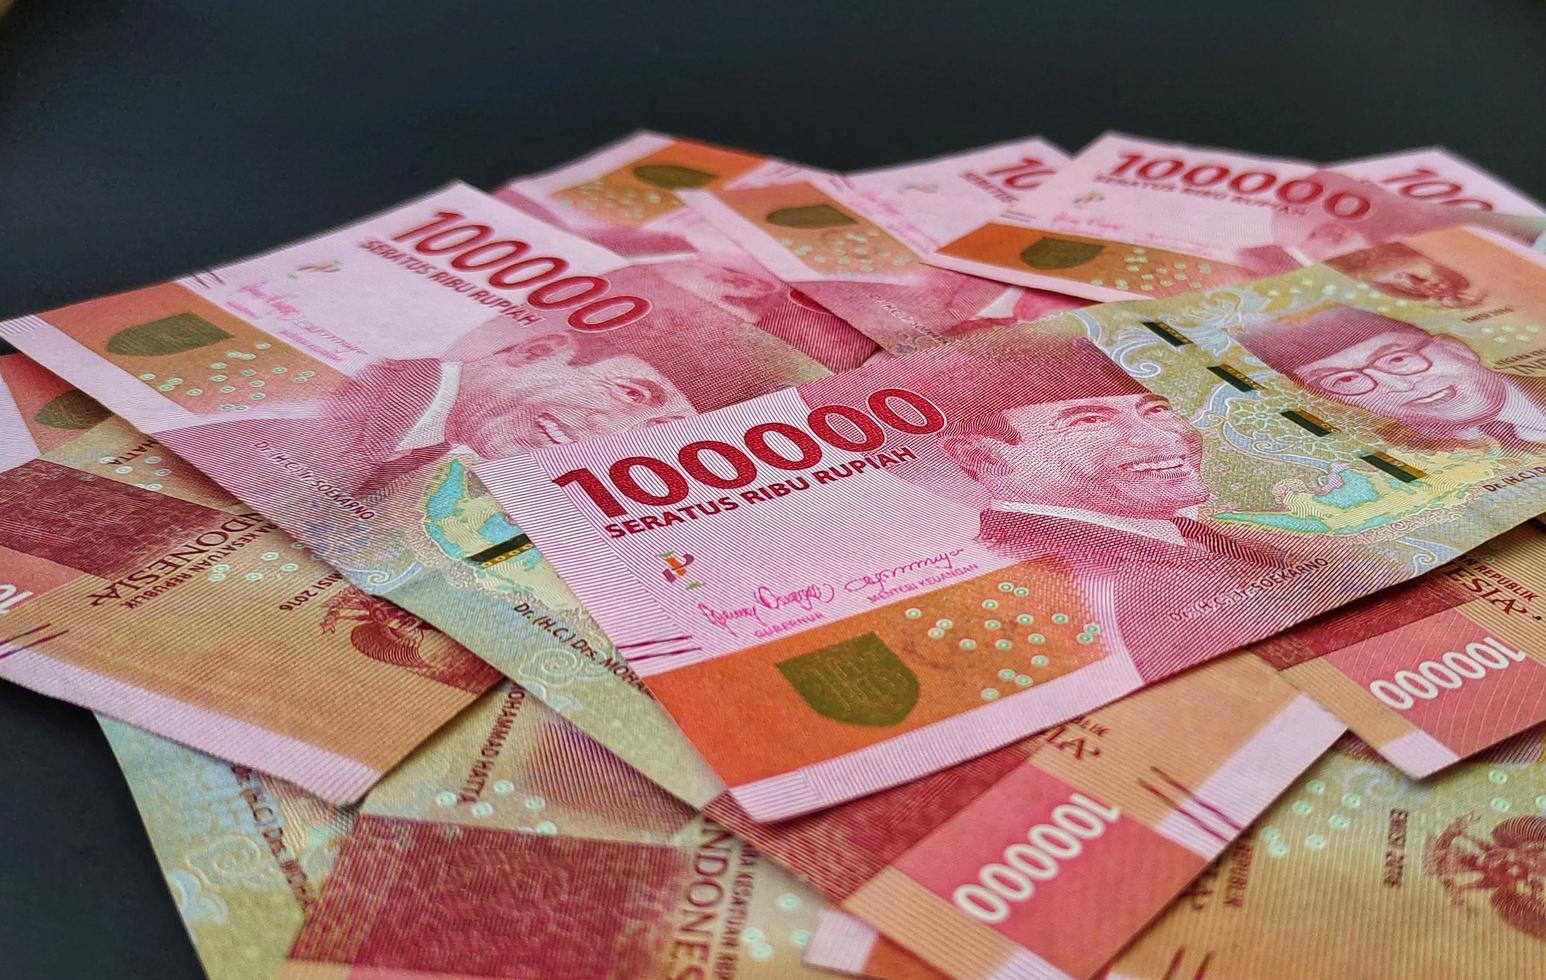 fotos de notas indonésias rp. 100.000. moeda da rupia indonésia isolada no fundo preto